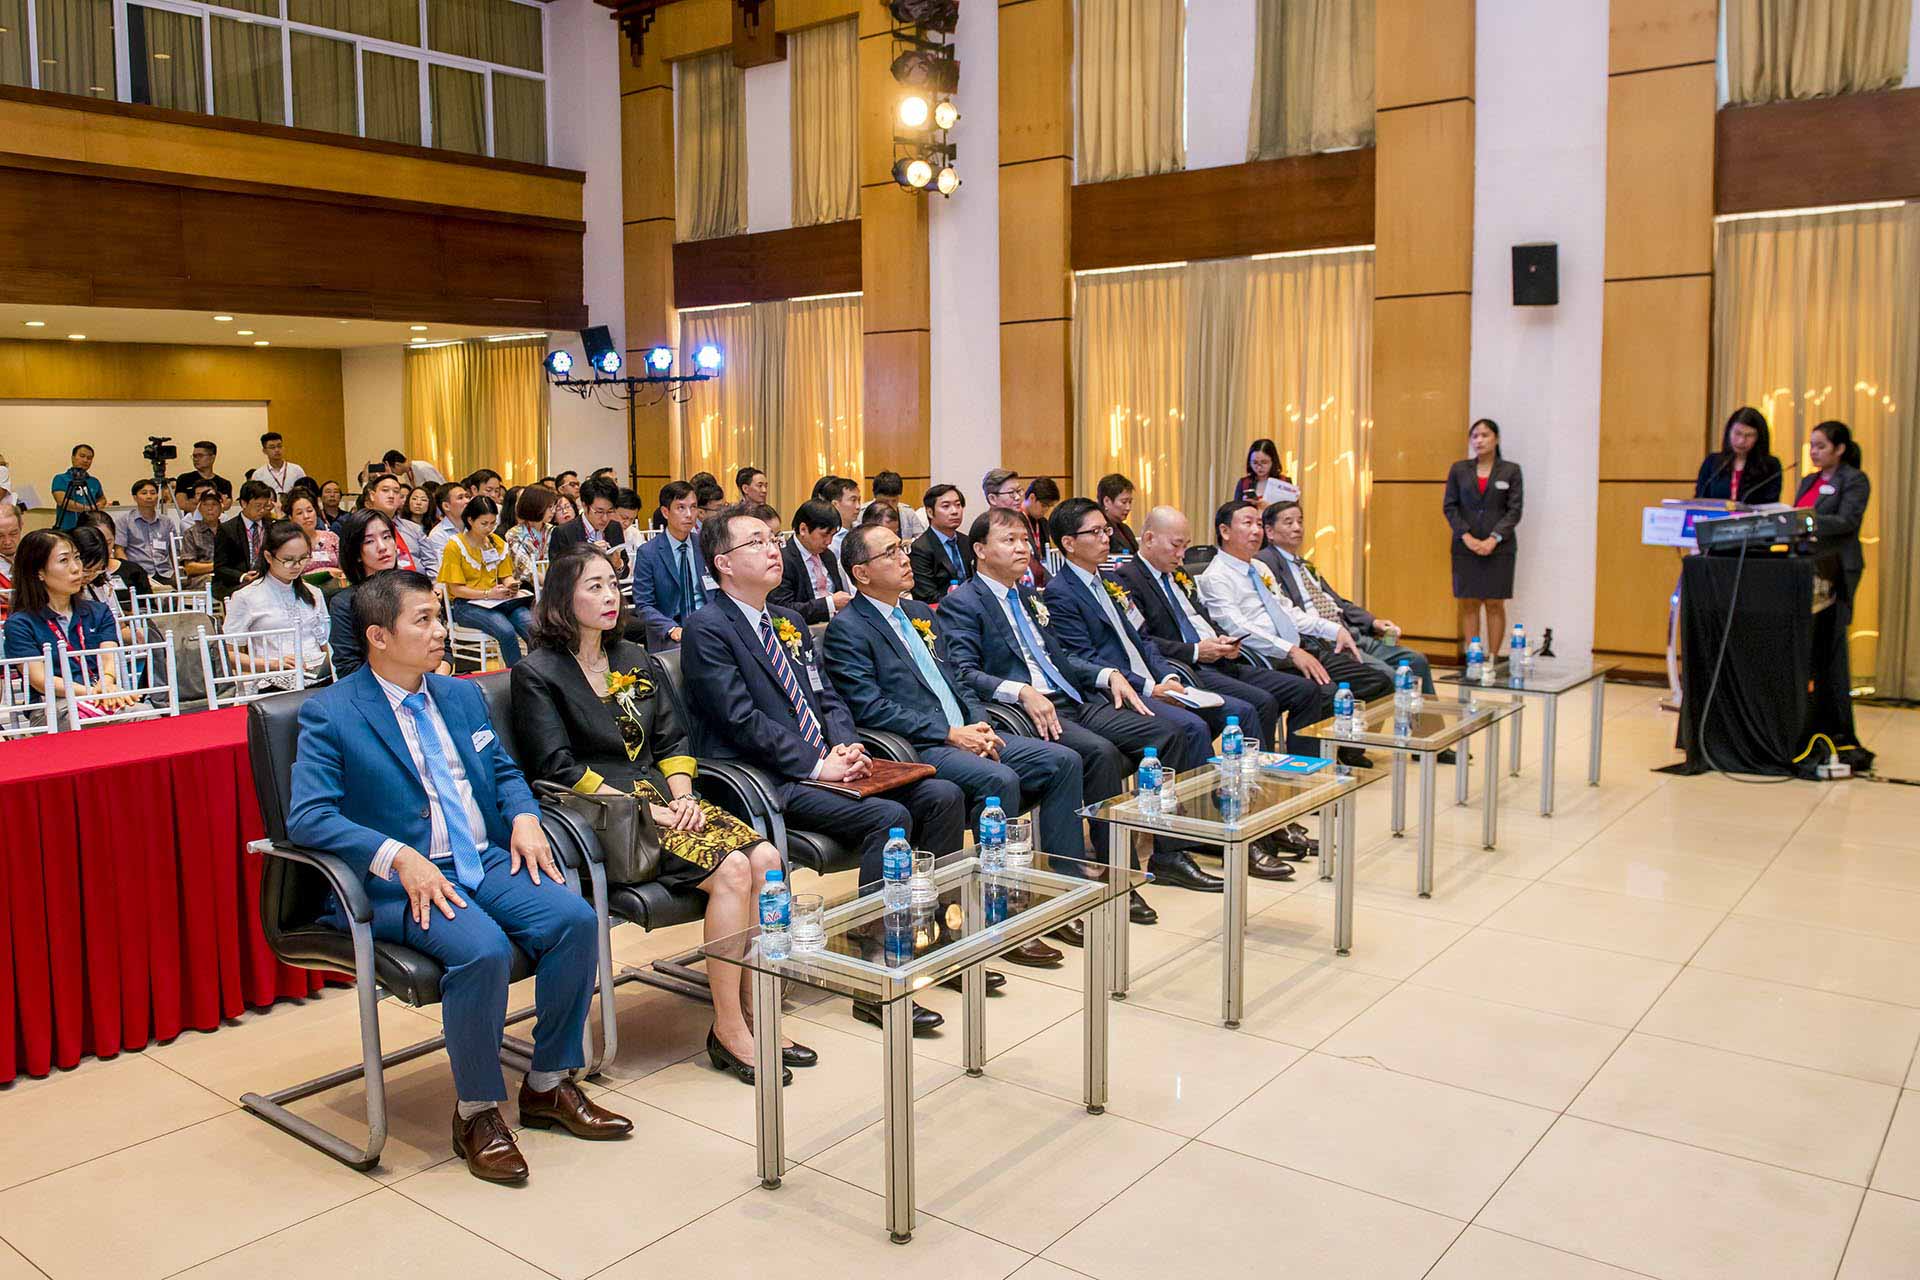 Lễ khai mạc Triển lãm Quốc tế lần thứ 11 về Công nghệ chế tạo phụ tùng công nghiệp tại Việt Nam và Triển lãm Công nghiệp hỗ trợ Việt Nam - Nhật Bản lần thứ 8